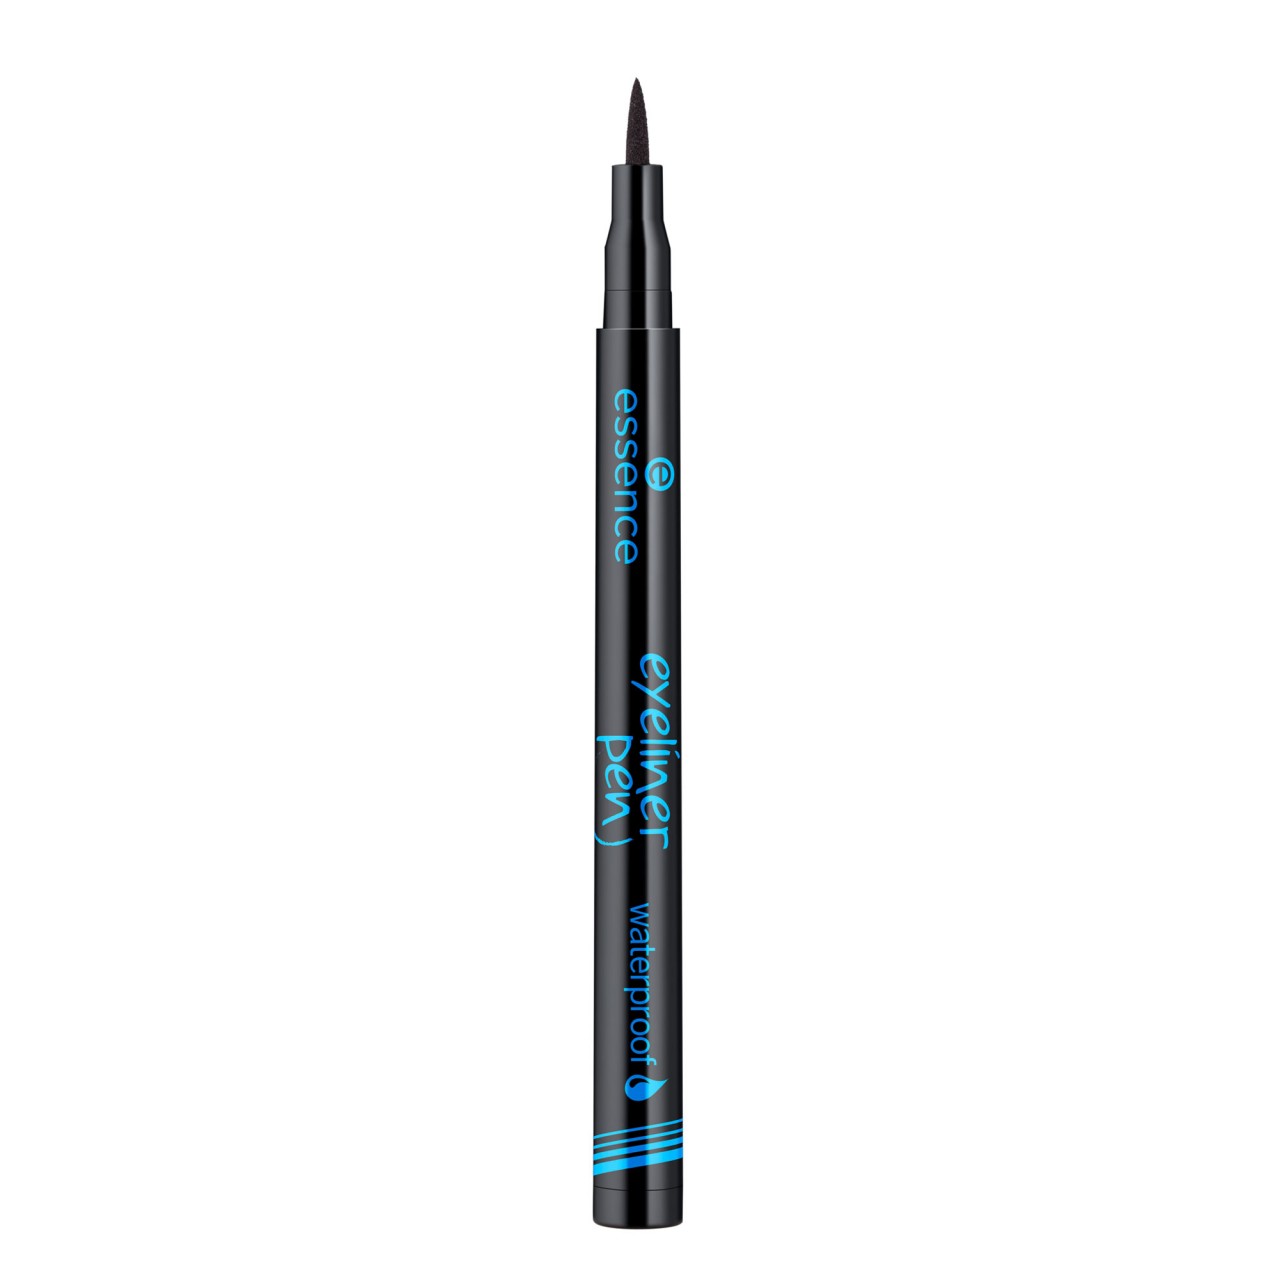 ESSENCE - Eyeliner Pen Waterproof Black - 